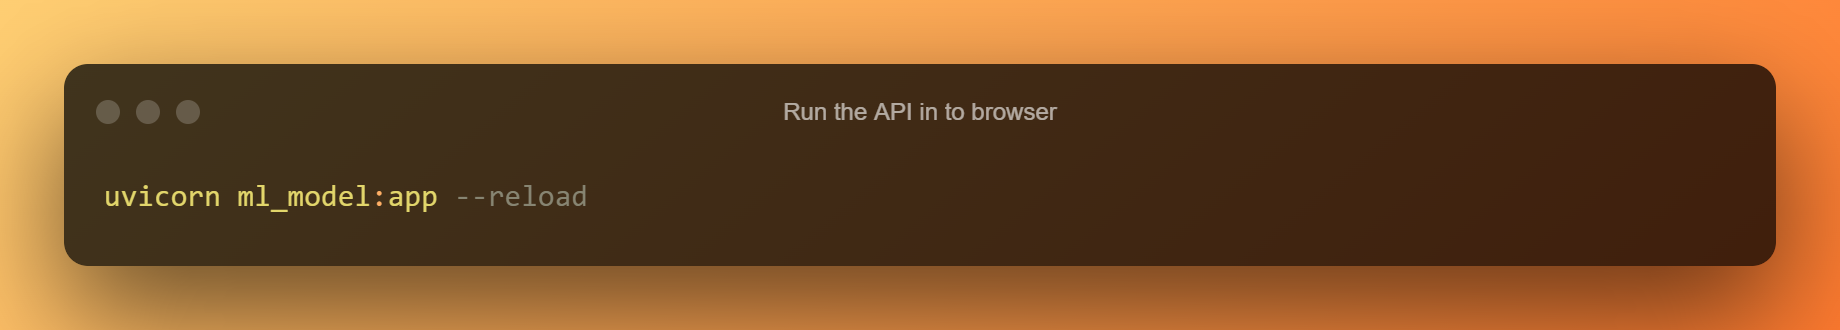 Browser တွင် API ကို Run ပါ။